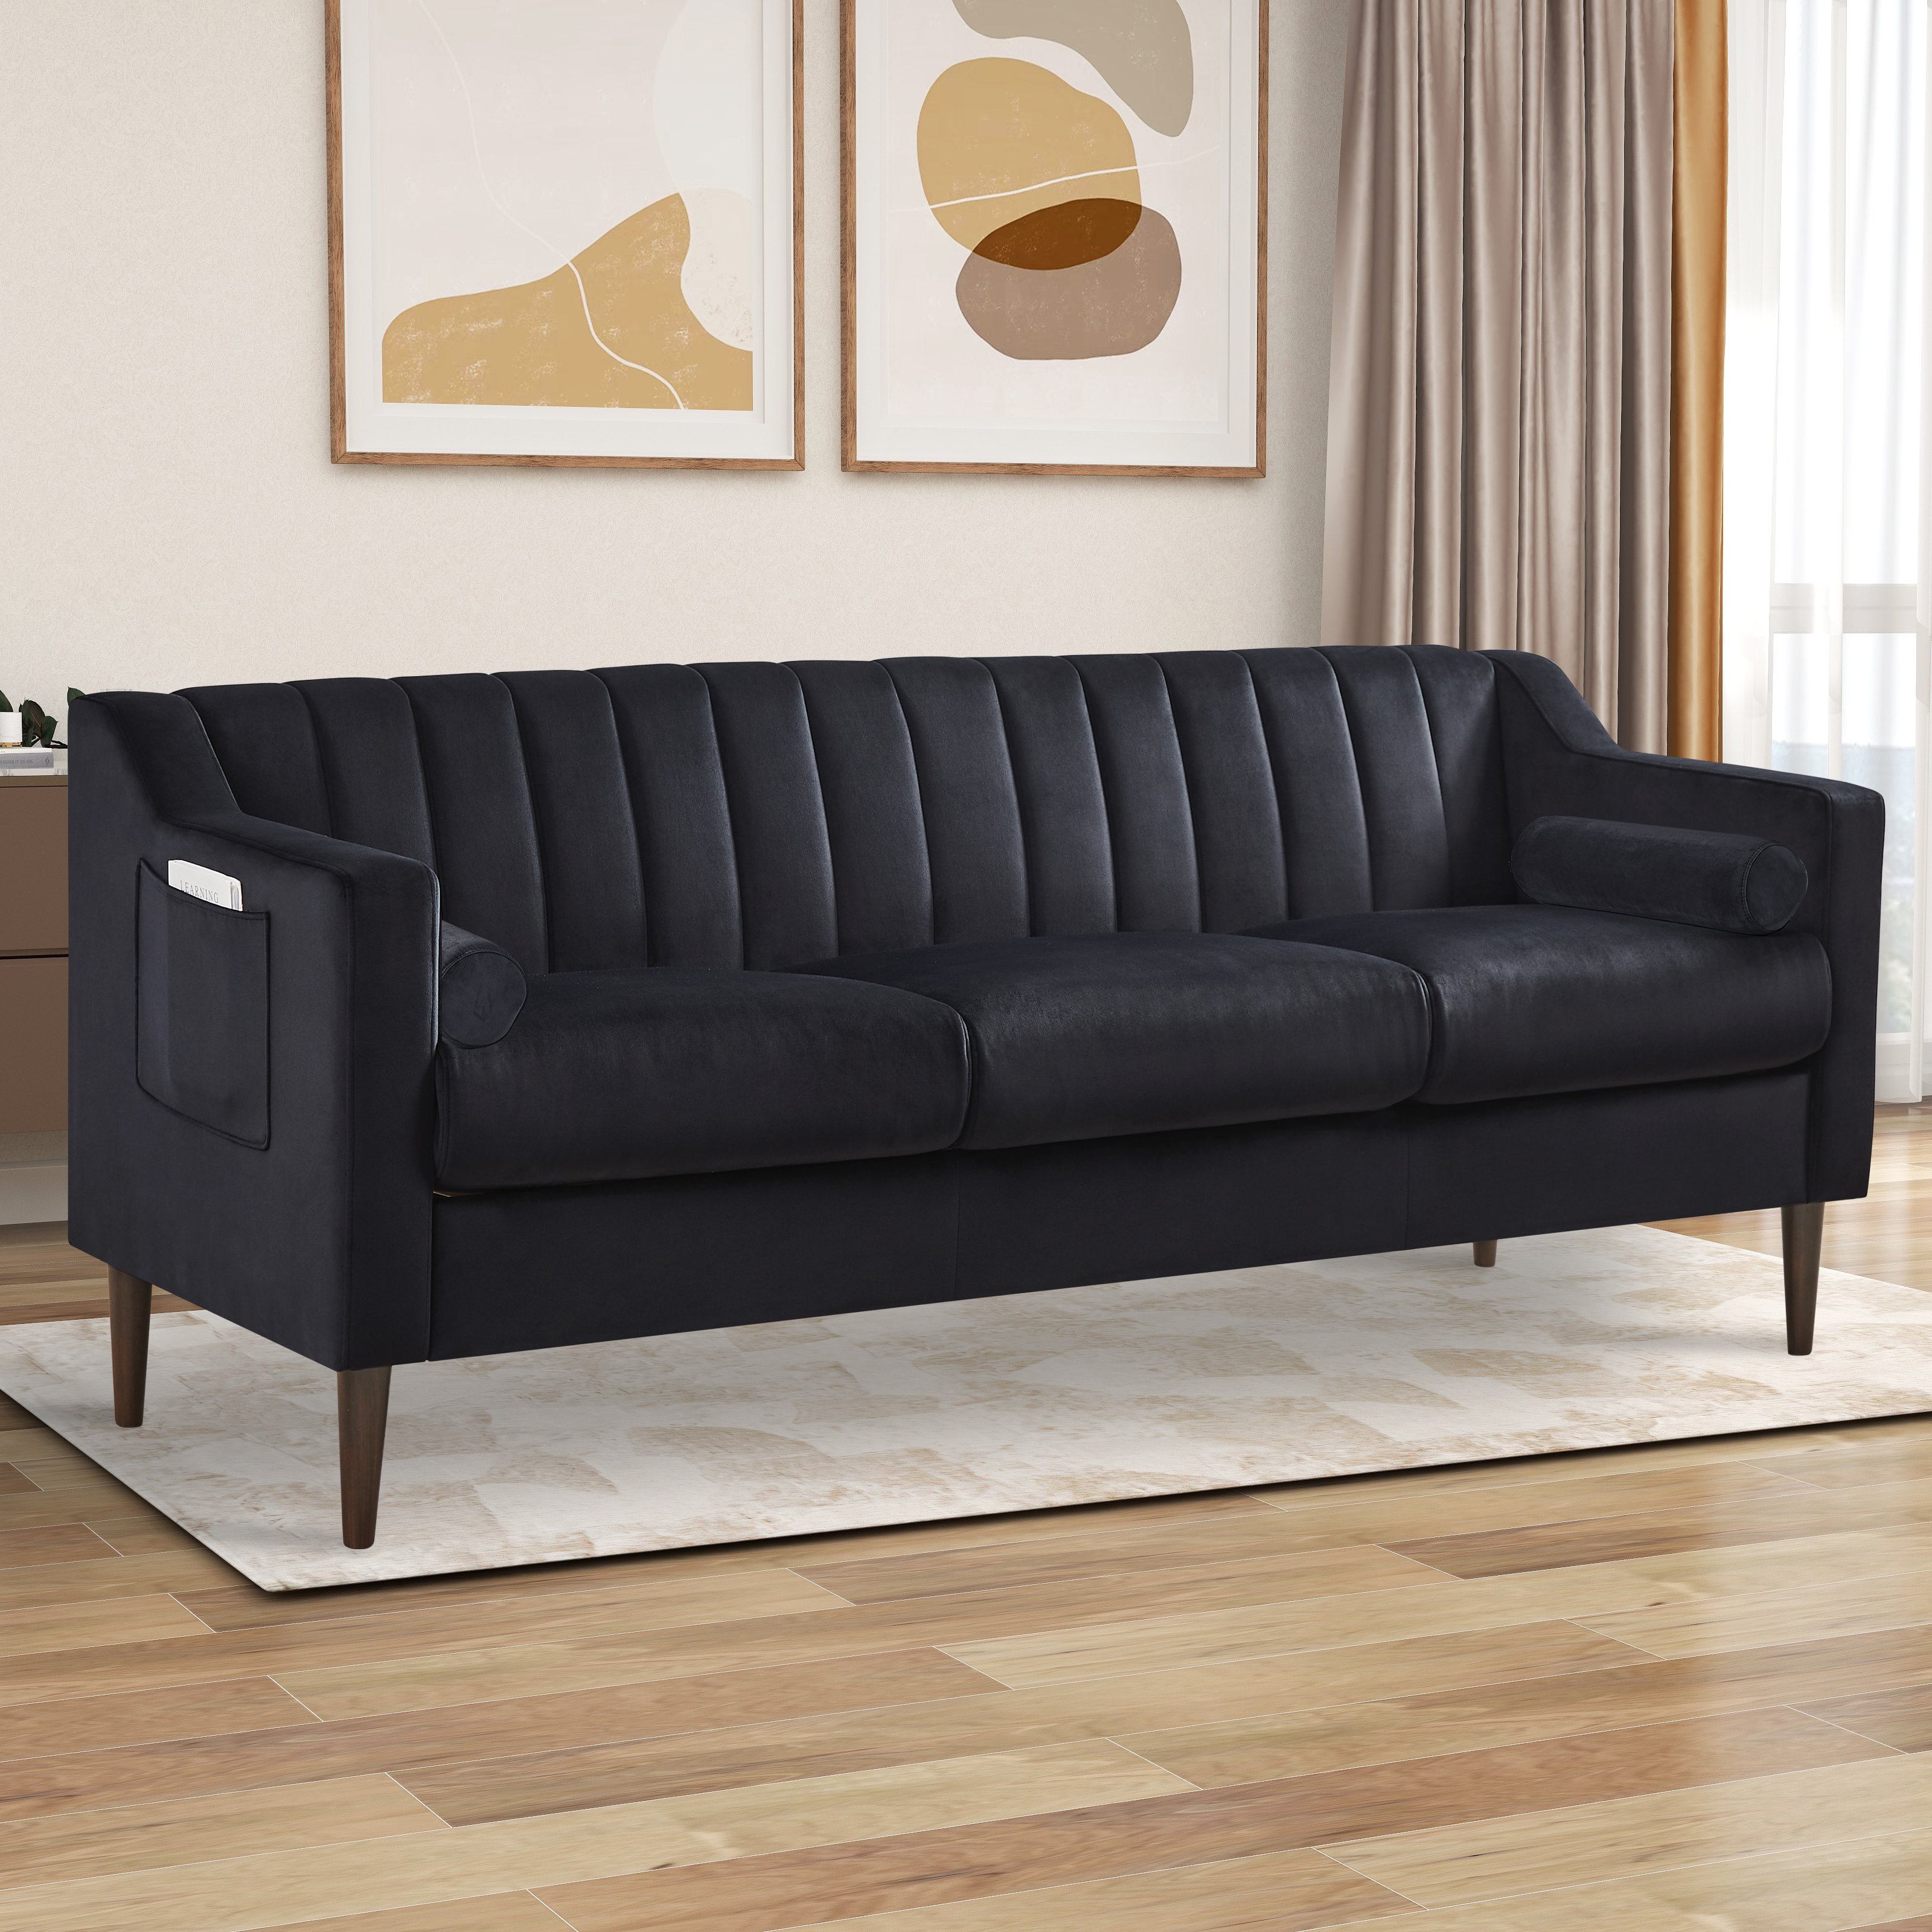 Mercer41 Fulword 76.5'' Upholstered Sofa | Wayfair